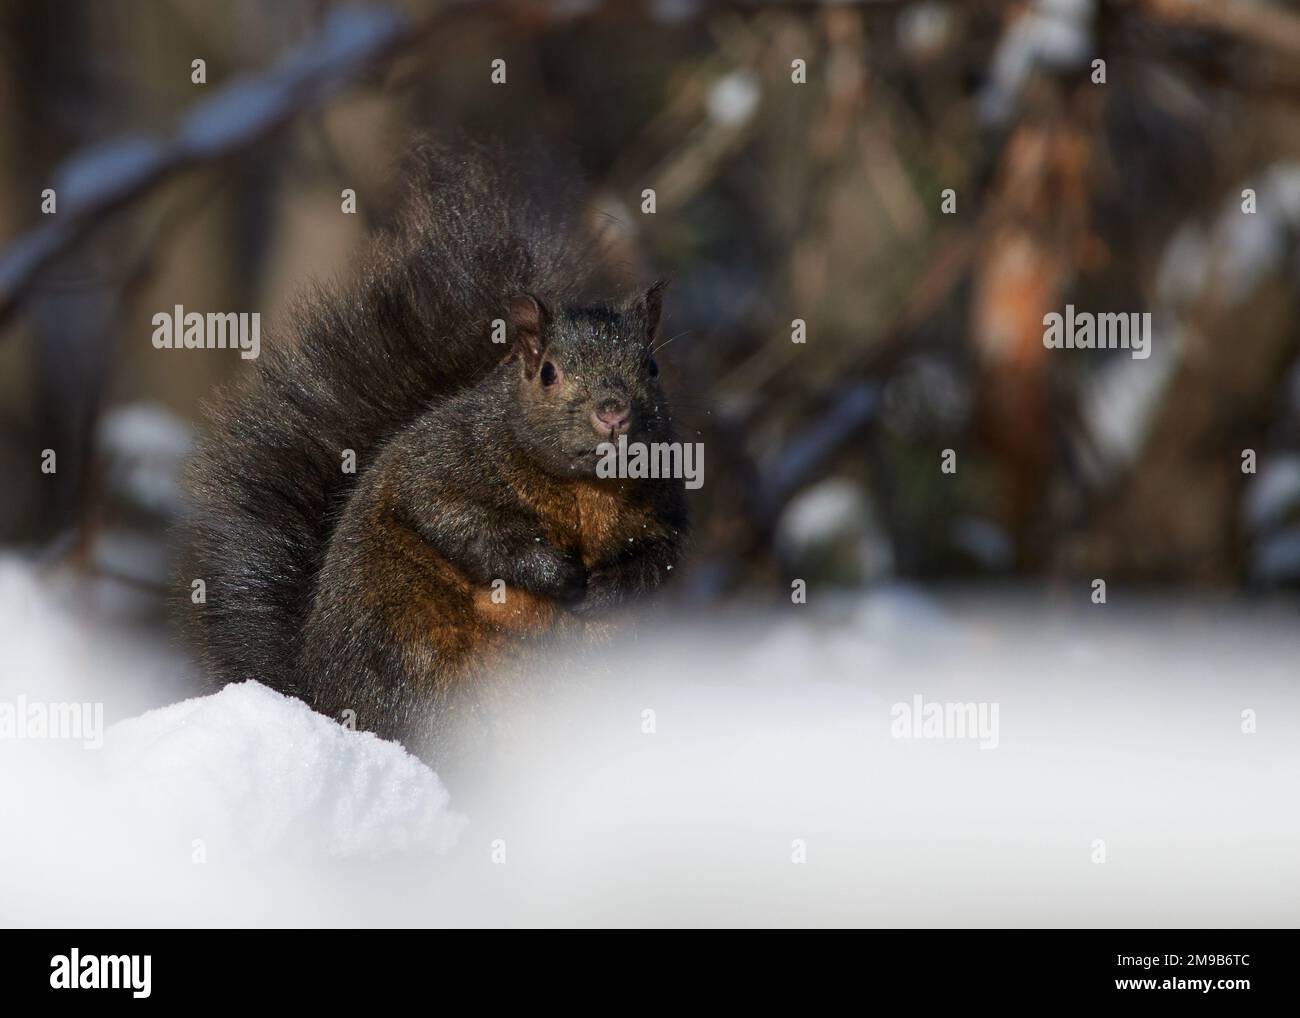 Ein Eichhörnchen, das an einem kalten Wintertag im Schnee sitzt. Stockfoto